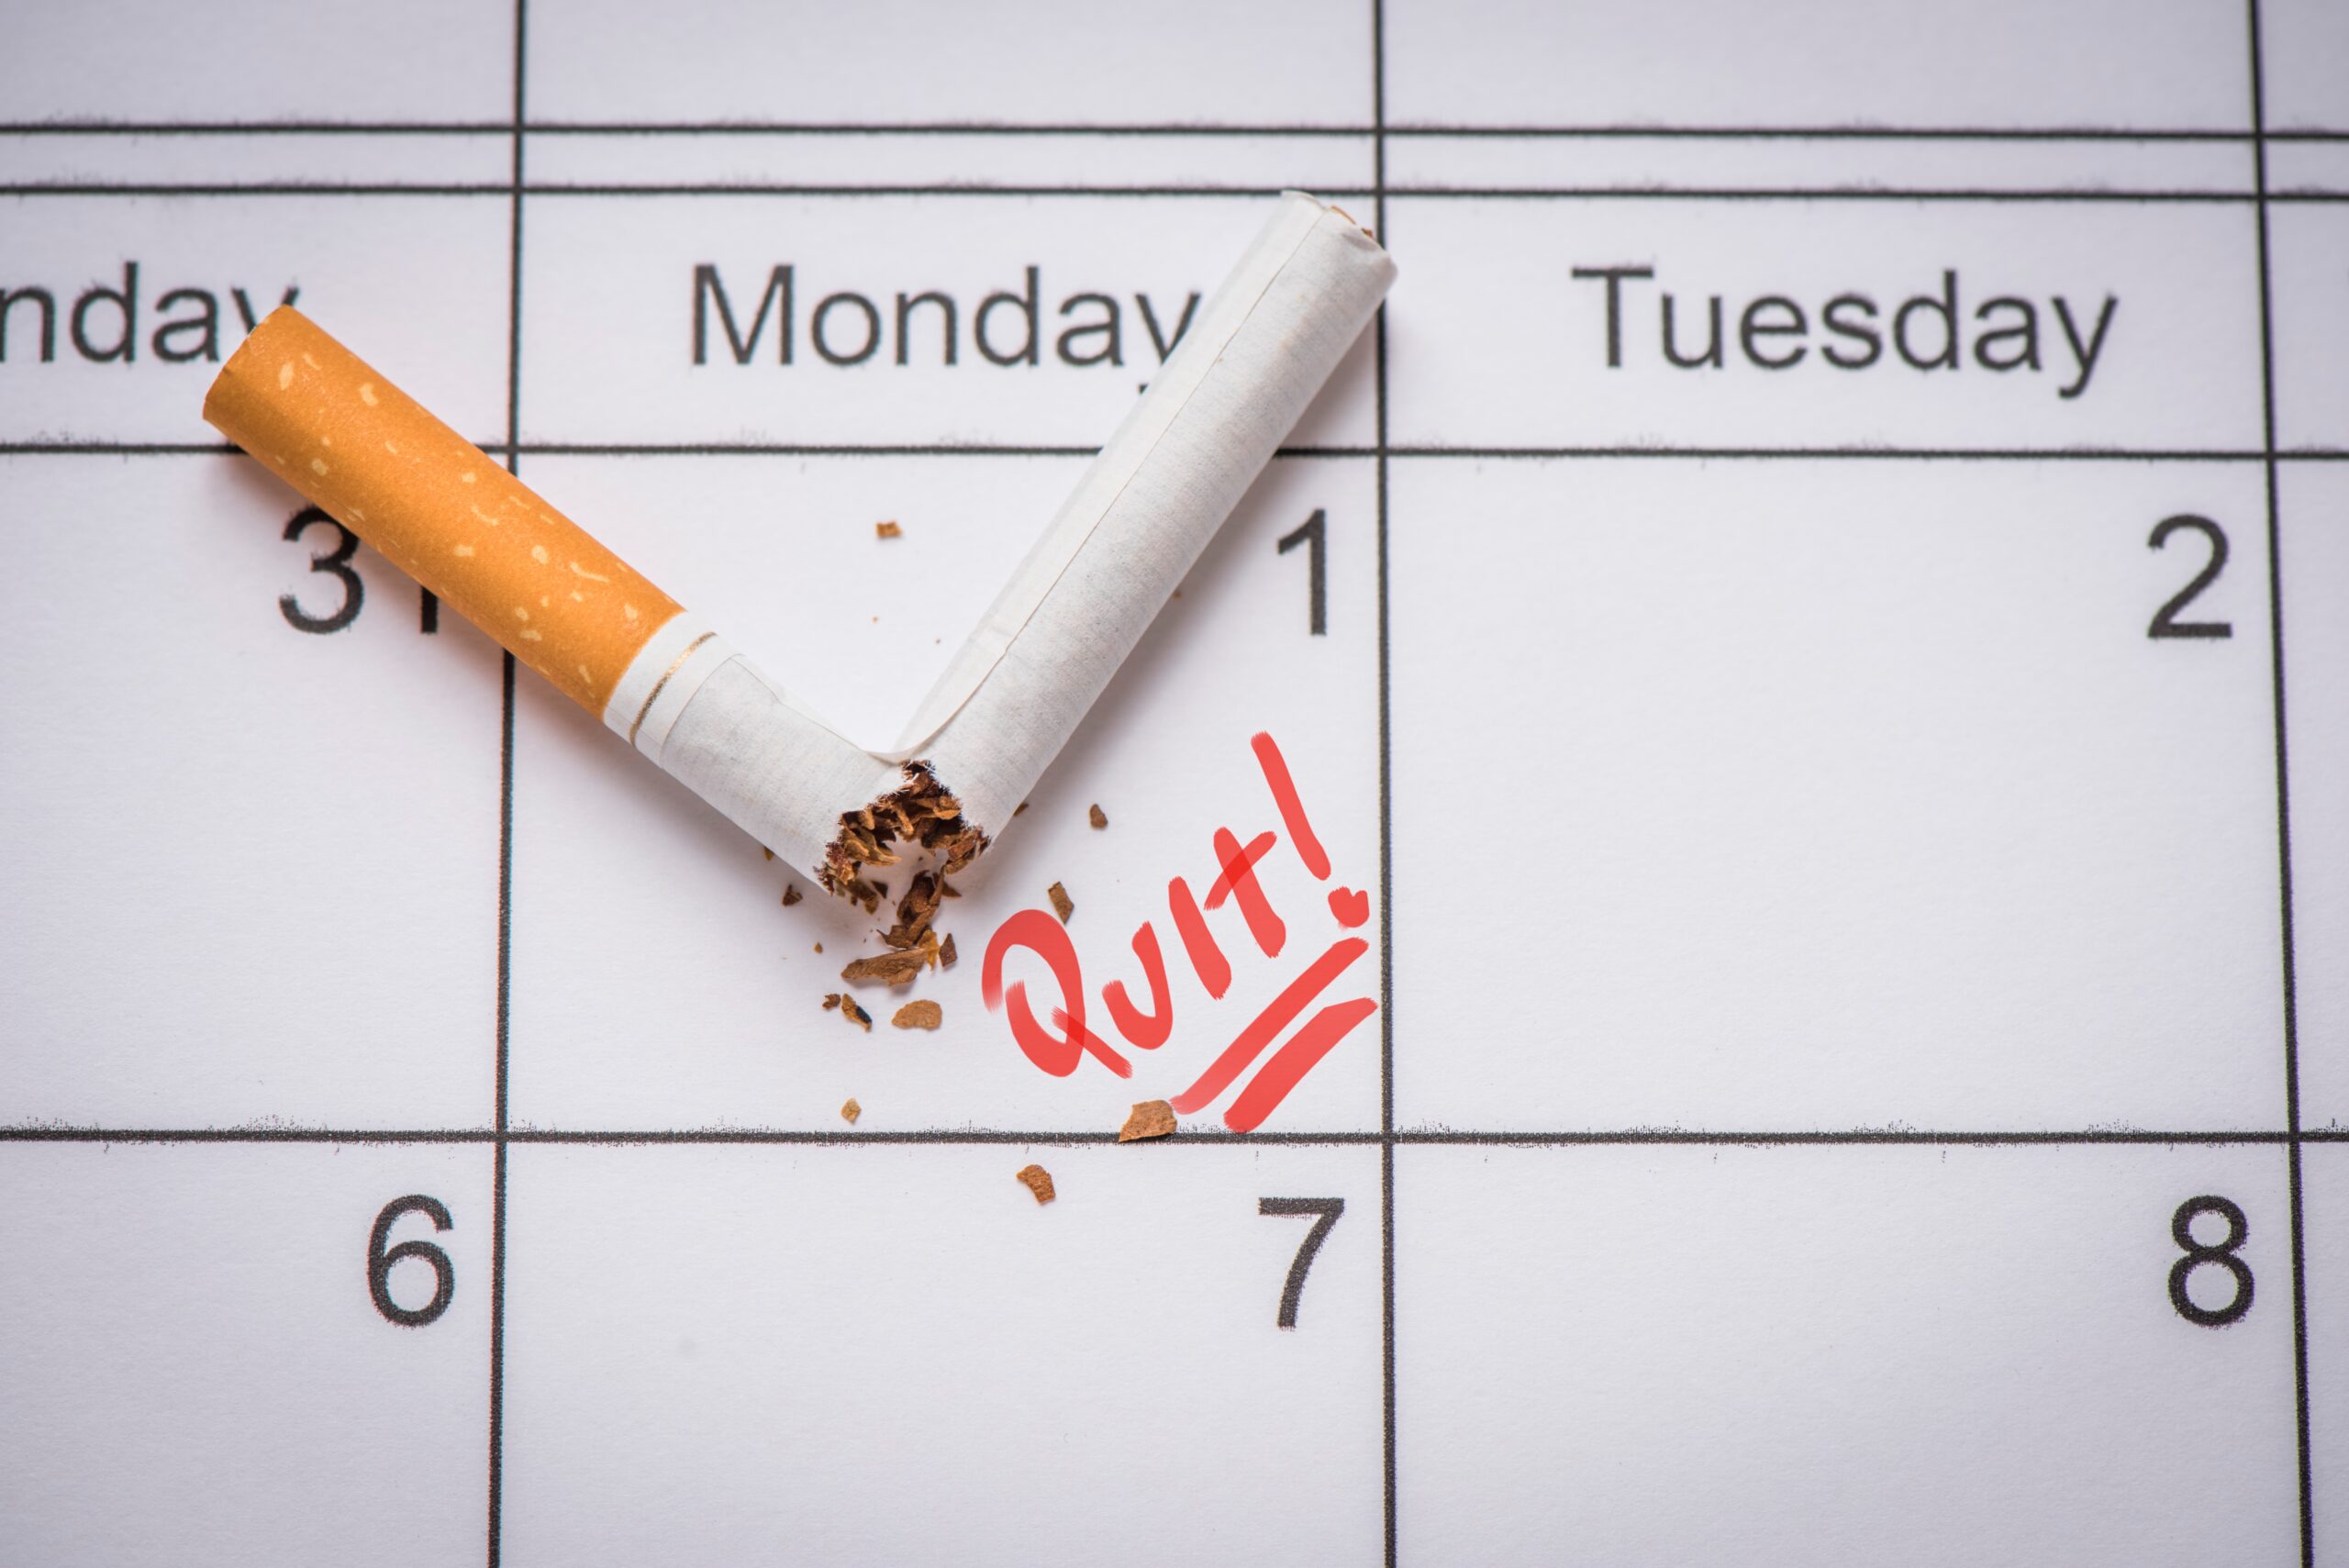 fluweel Knorrig Beperking 5 redenen waarom 2022 hét jaar is om te stoppen met roken - Prostop